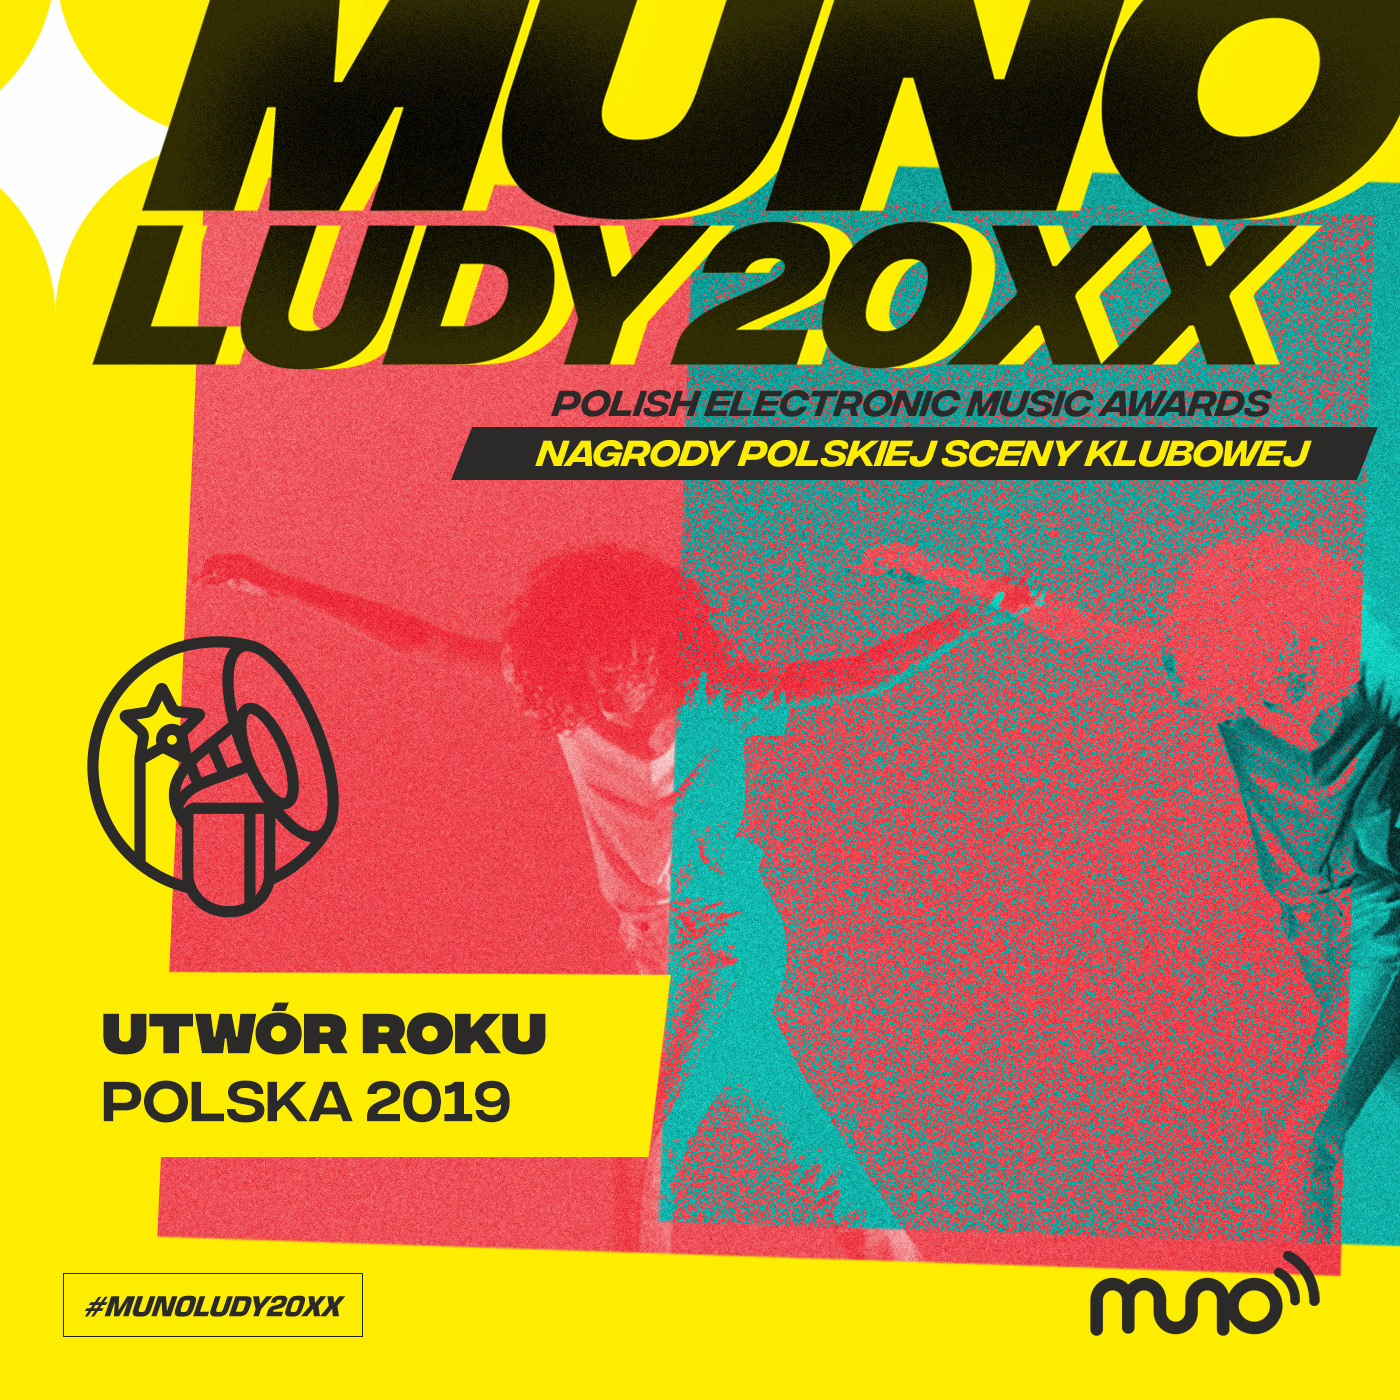 Munoludy 20XX Utwór Roku Polska 2019